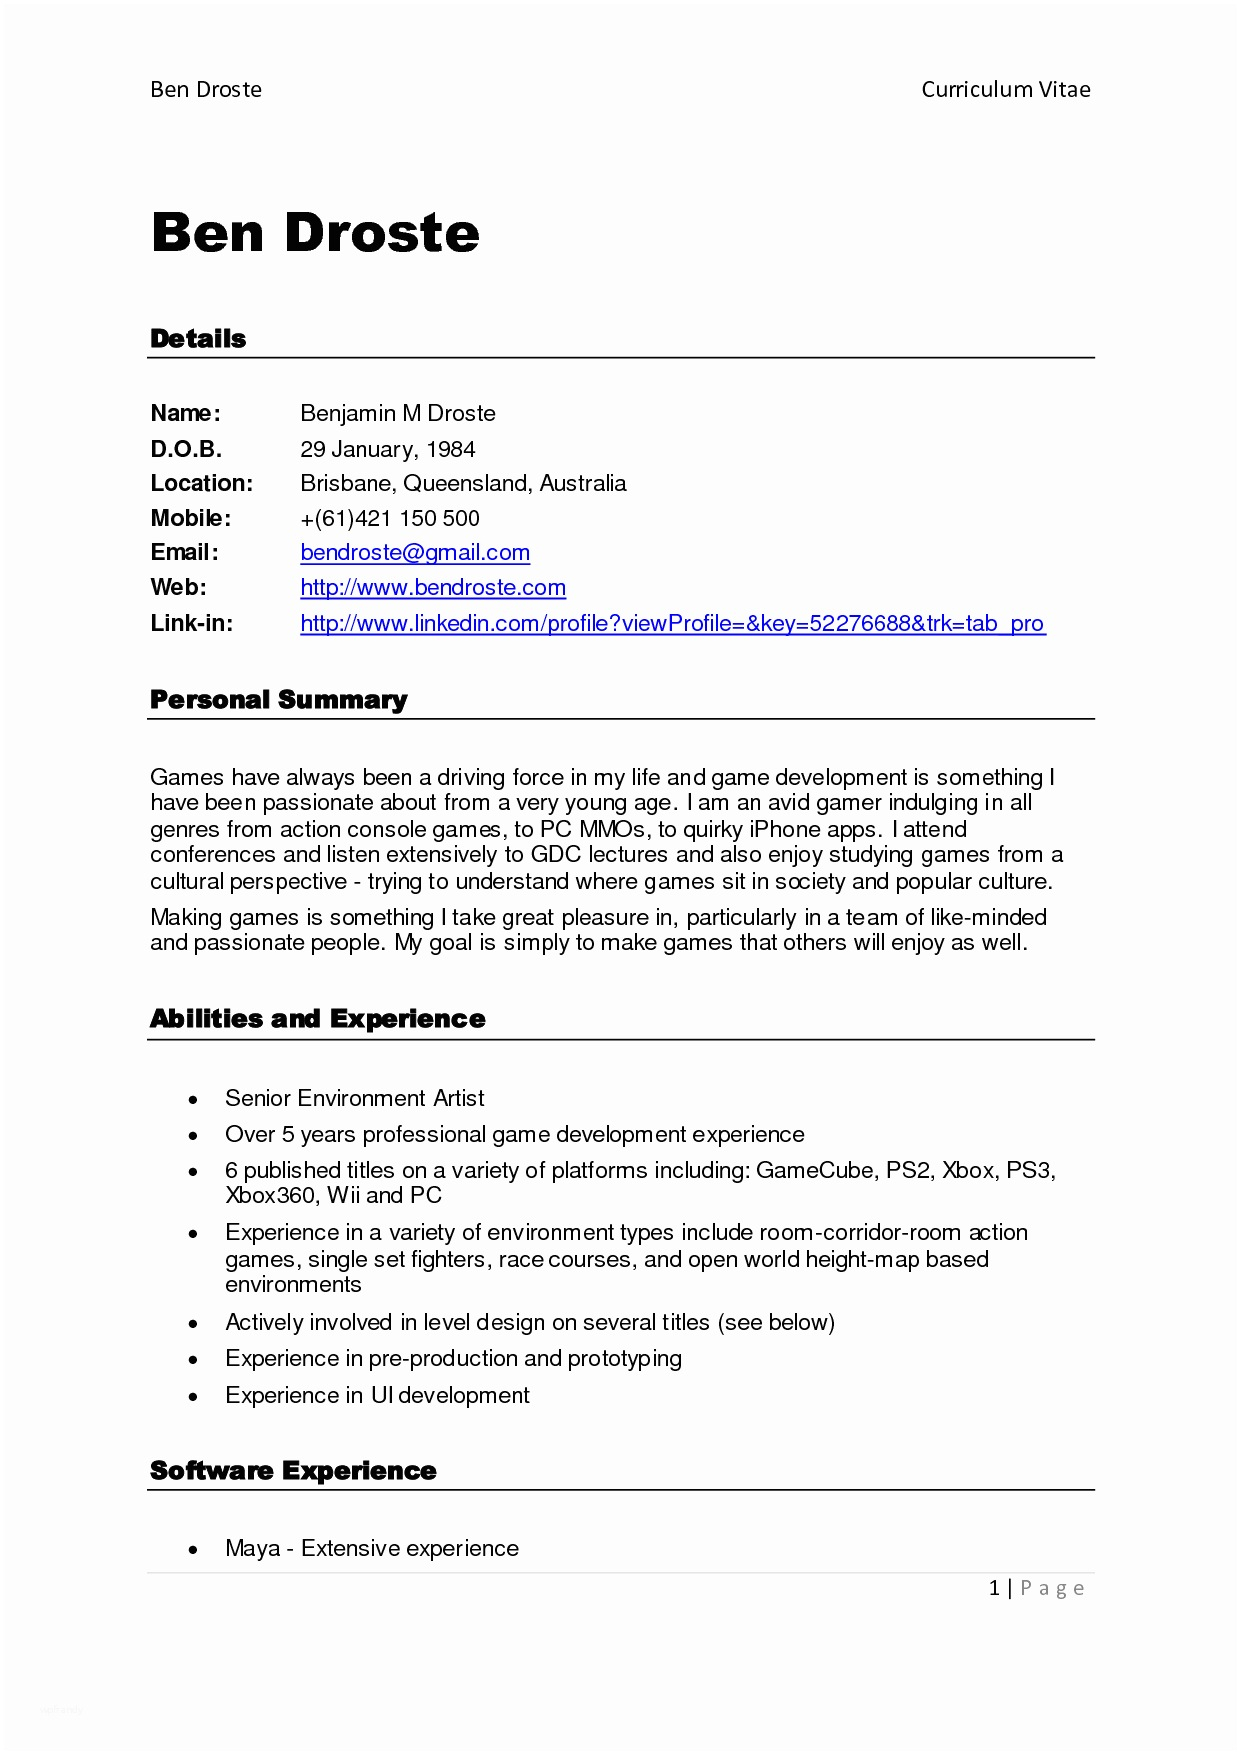 Free Online Resume Builder Printable Professional Template - Free Online Resume Templates Printable